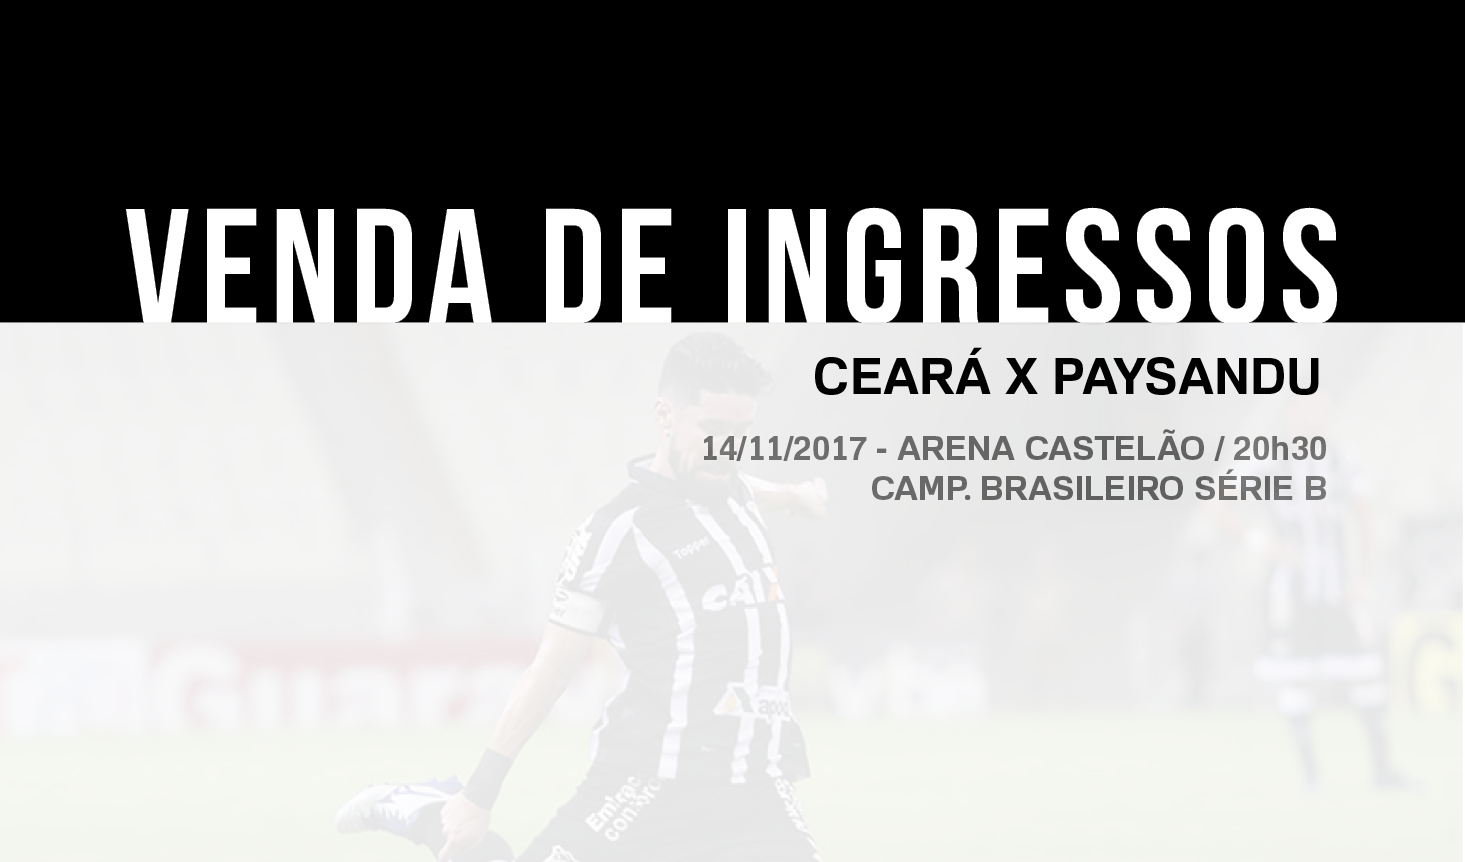 Ceará x Paysandu: Confira informações sobre a venda de ingressos